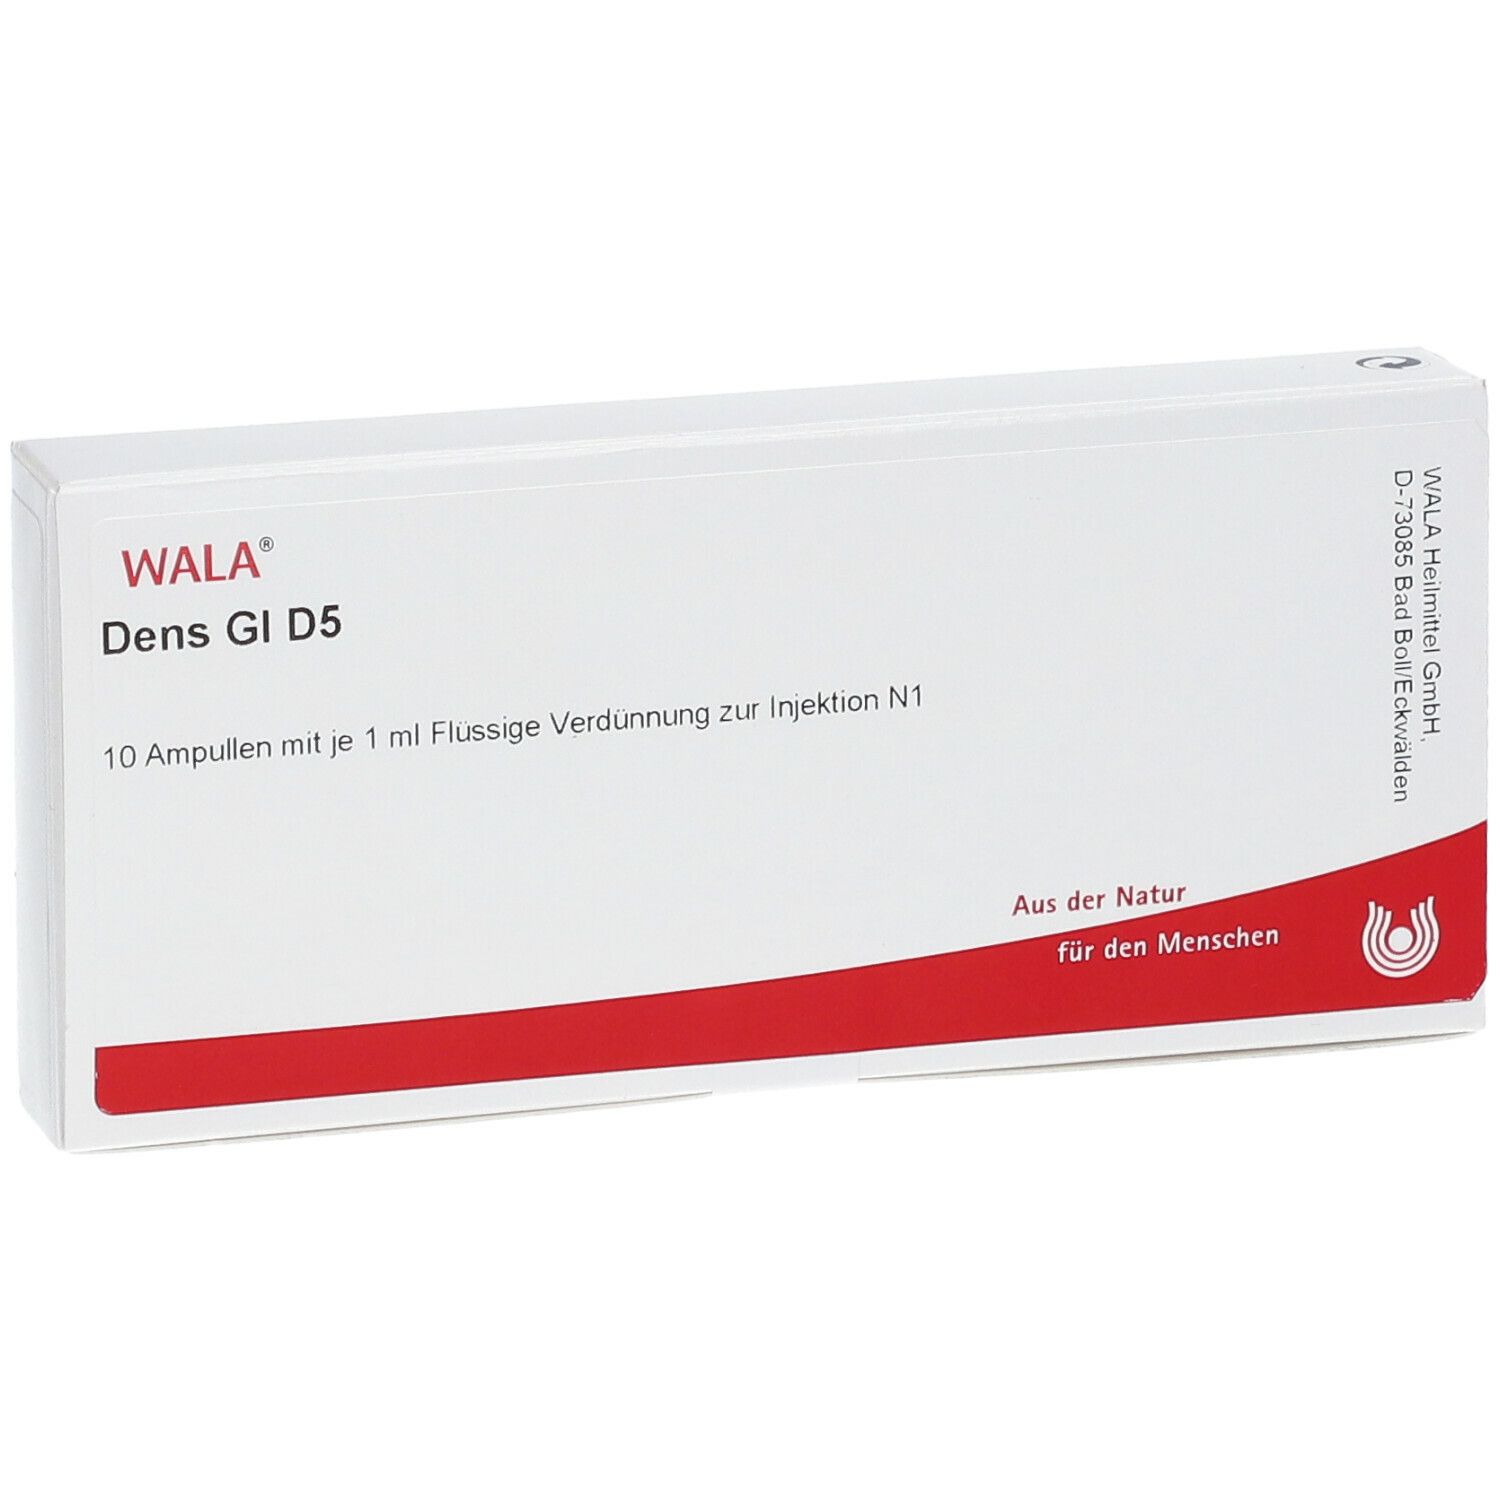 WALA® Dens Gl D 5